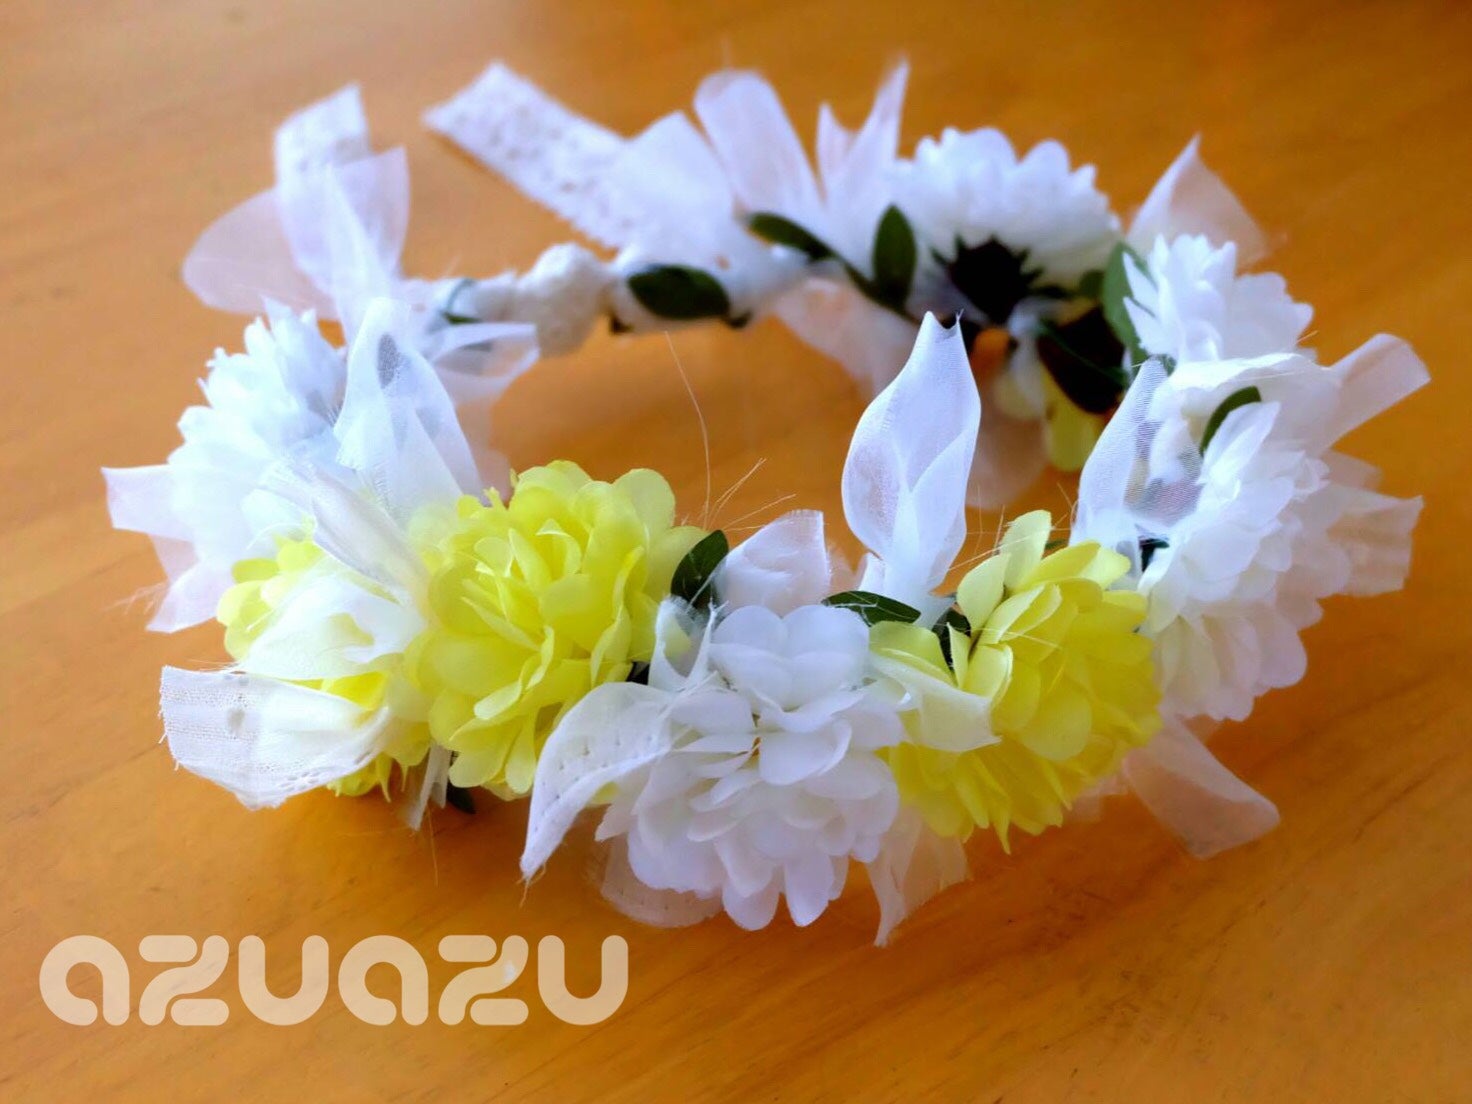 100均ハンドメイド 春の装い 花かんむり コサージュ バニーリース リビング埼玉web